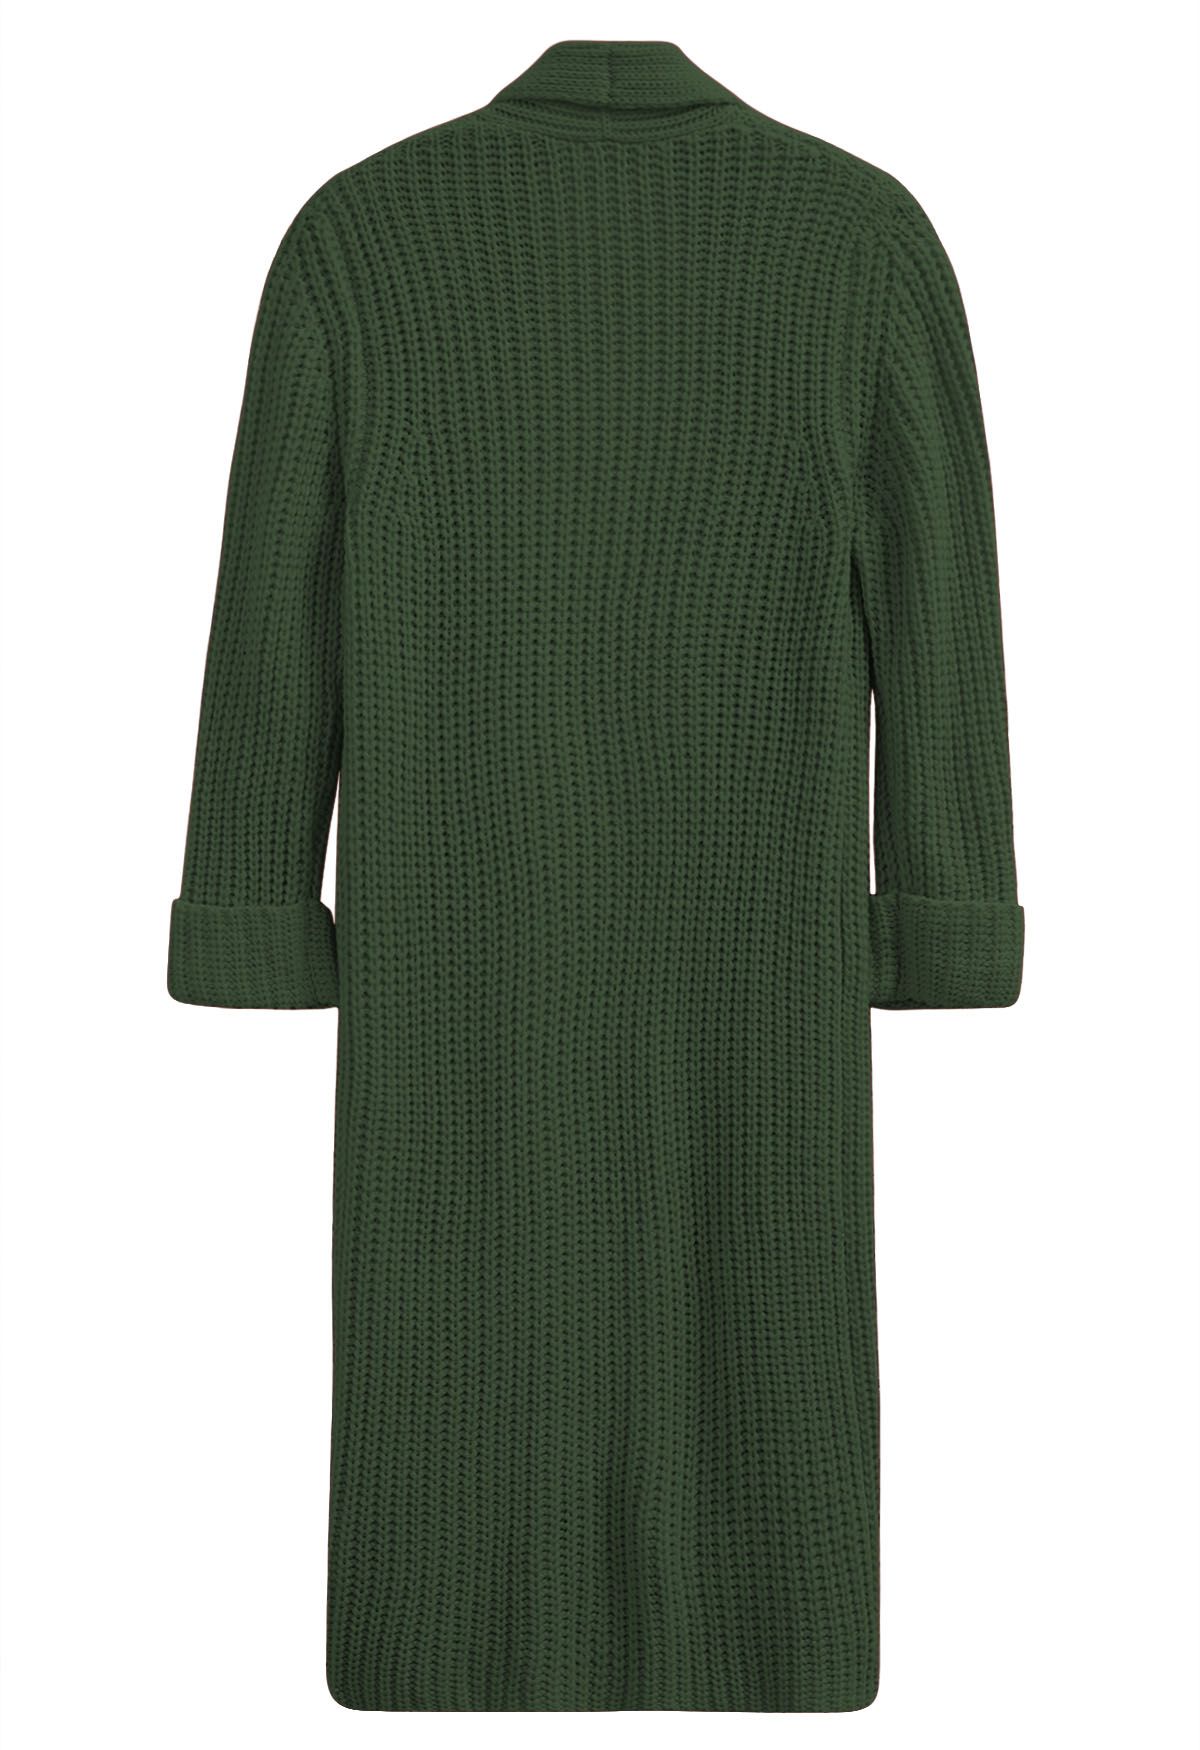 Swanky Open Front Longline Knit Cardigan in Dark Green